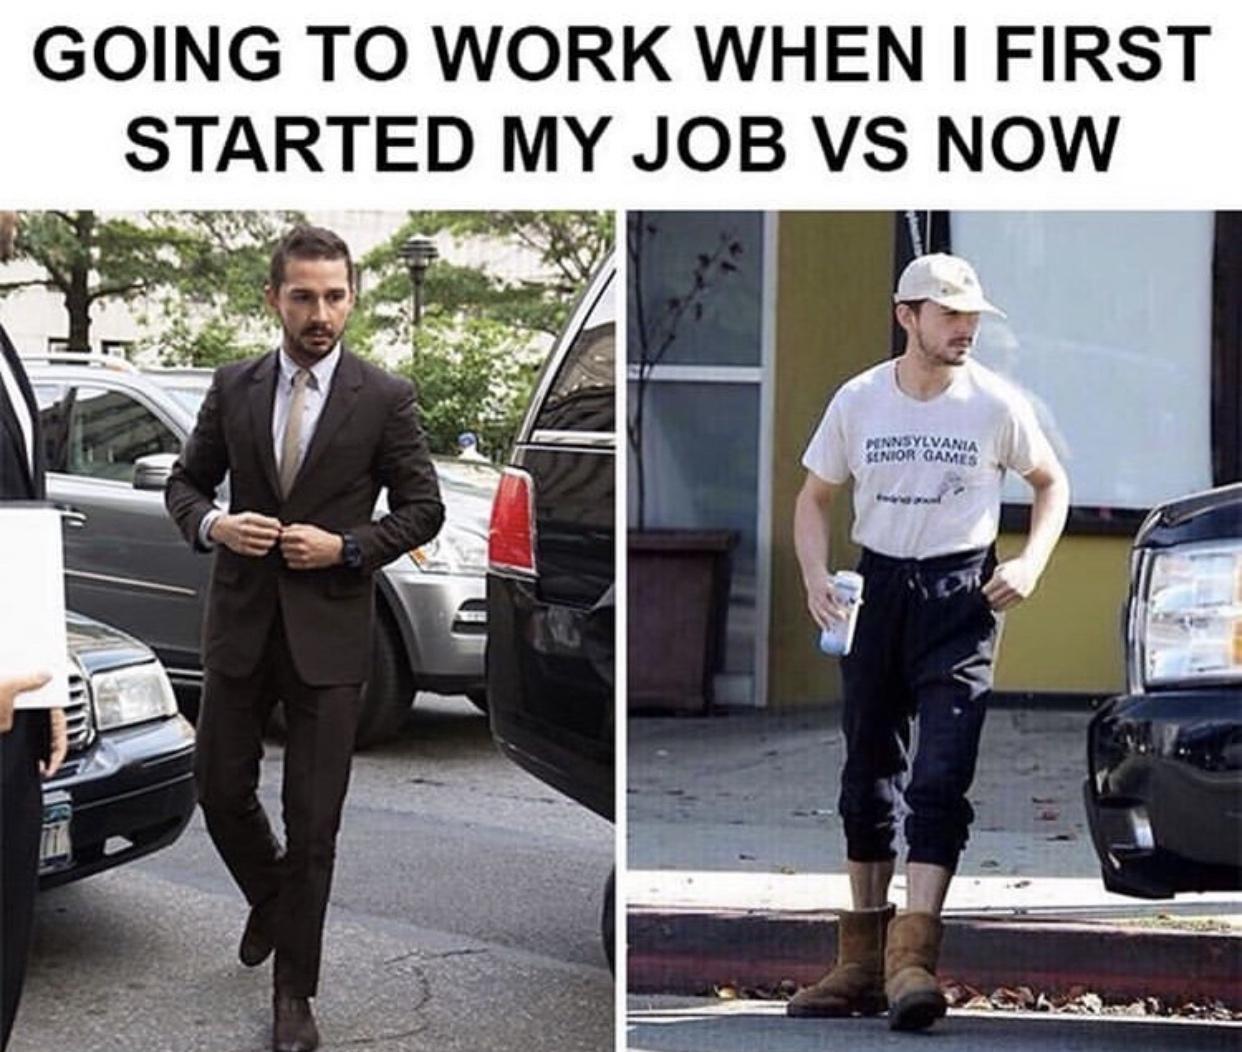 Starting a job vs now